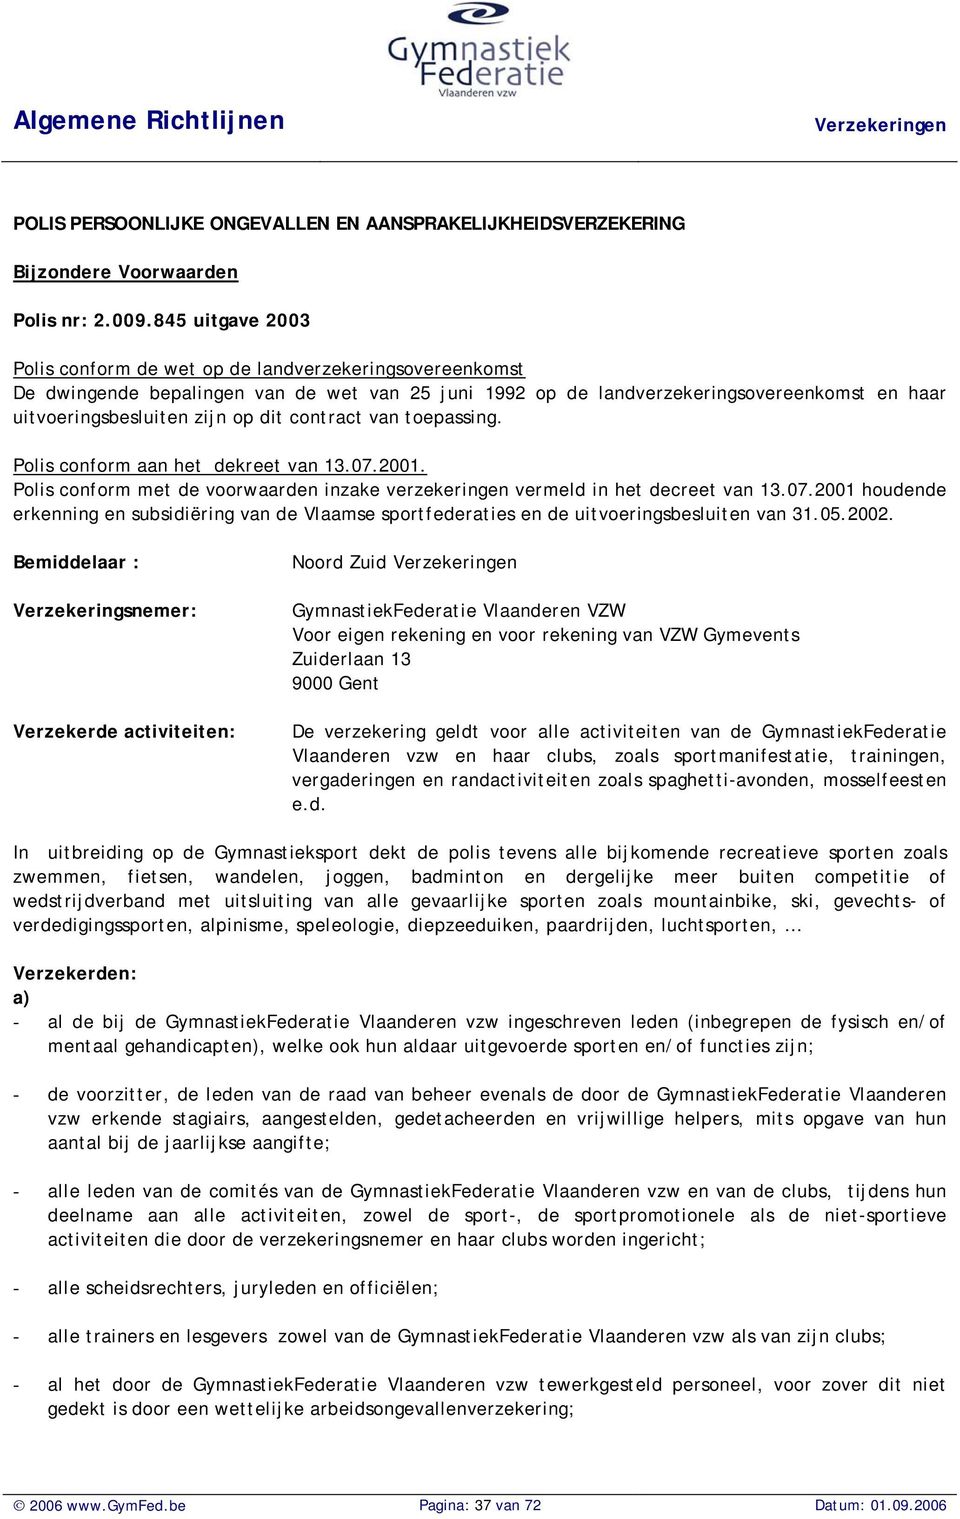 dit contract van toepassing. Polis conform aan het dekreet van 13.07.2001. Polis conform met de voorwaarden inzake verzekeringen vermeld in het decreet van 13.07.2001 houdende erkenning en subsidiëring van de Vlaamse sportfederaties en de uitvoeringsbesluiten van 31.